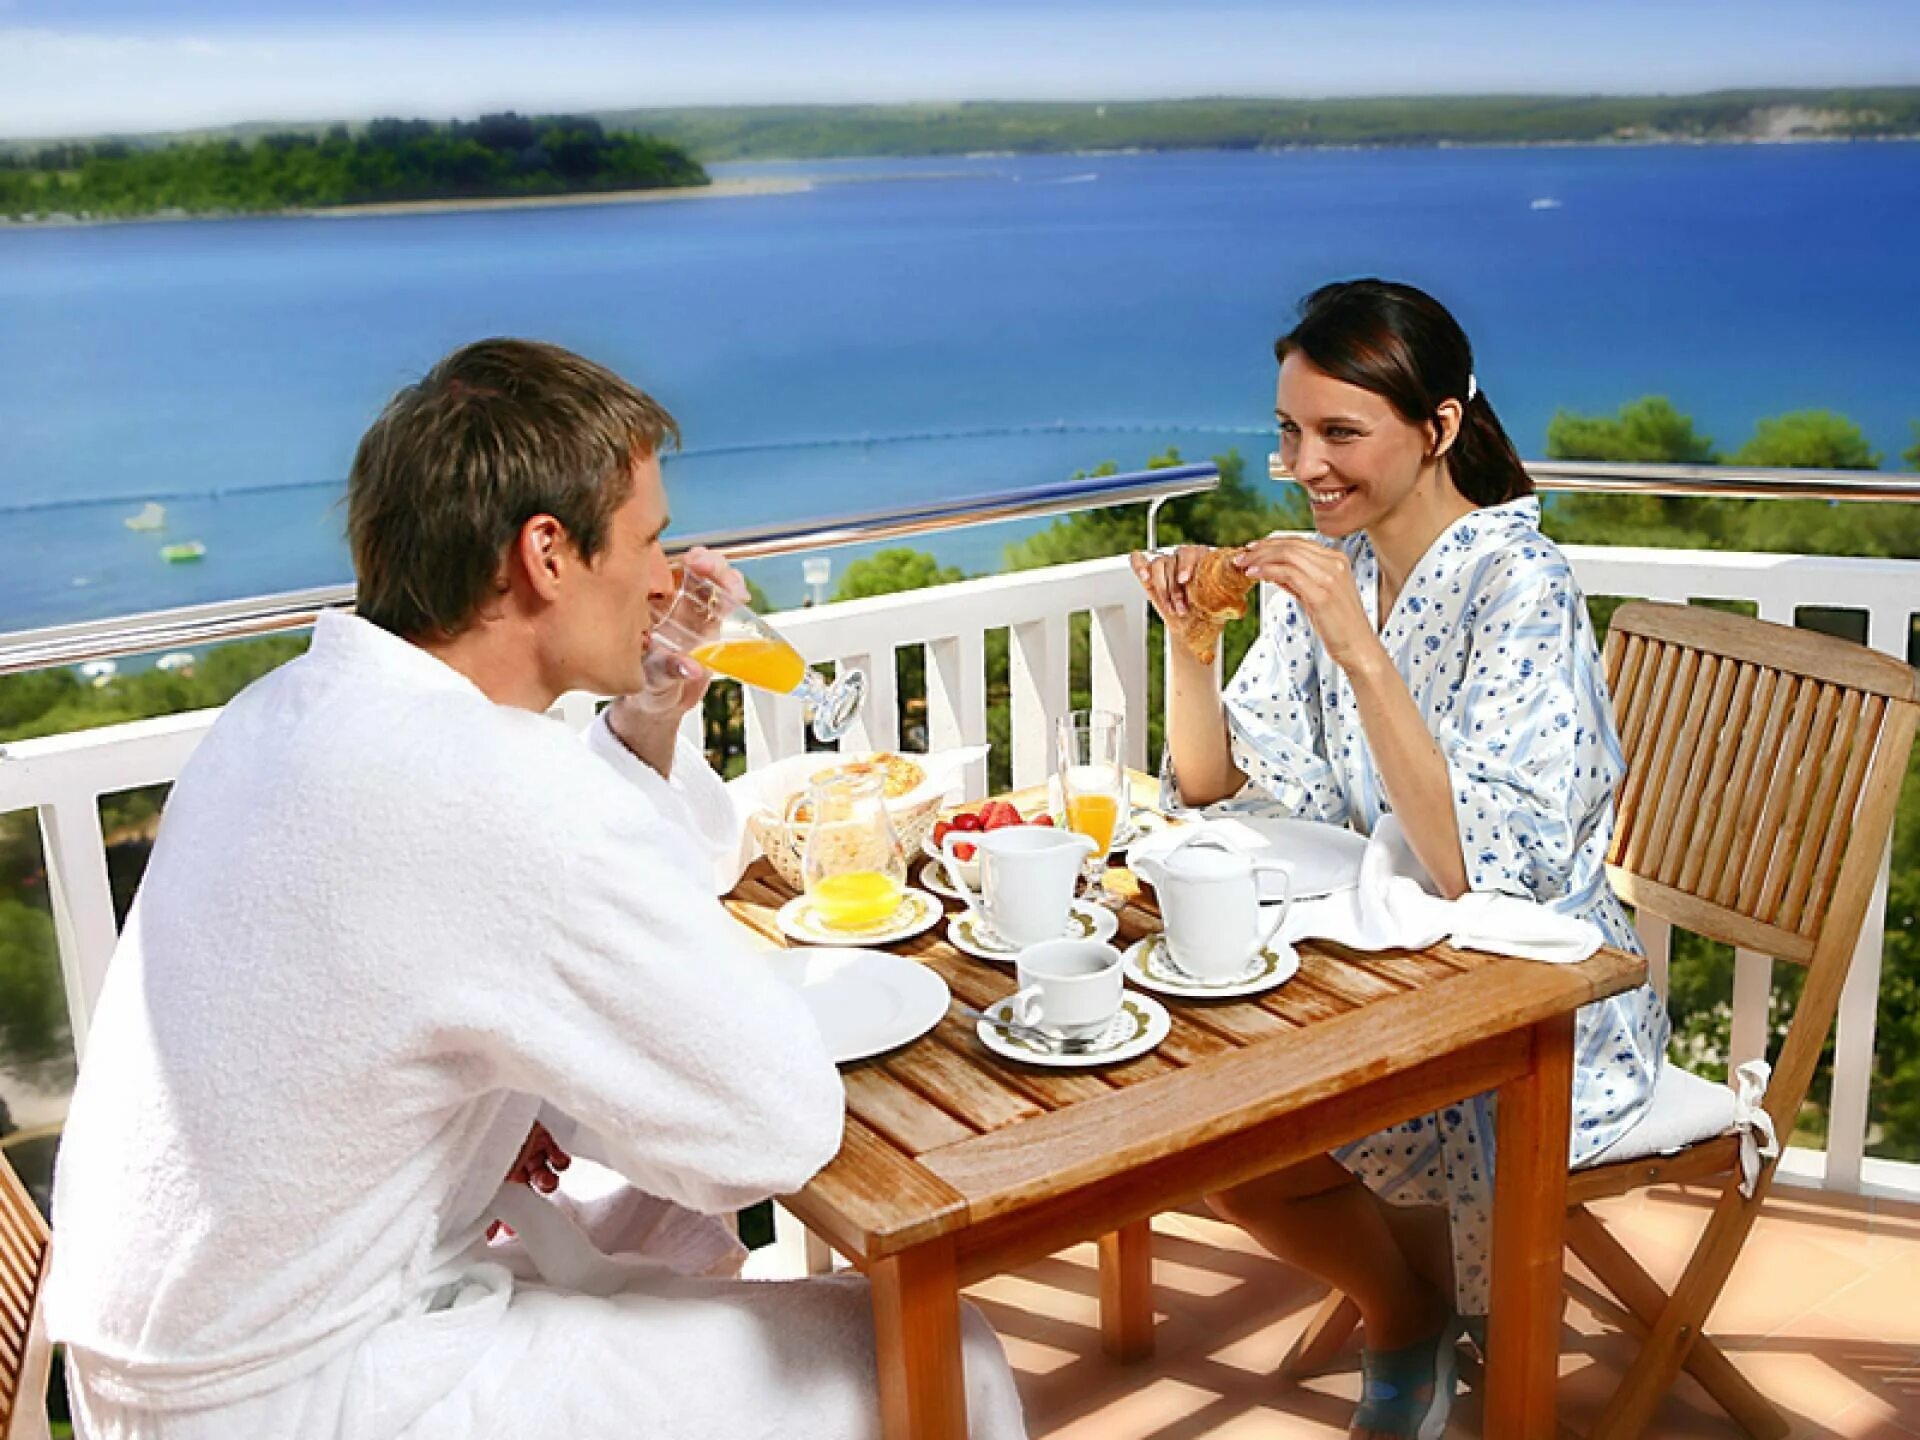 Завтрак на террасе с видом на море. Завтрак на веранде. Завтрак на балконе. Утро на террасе. Семейные пары утром